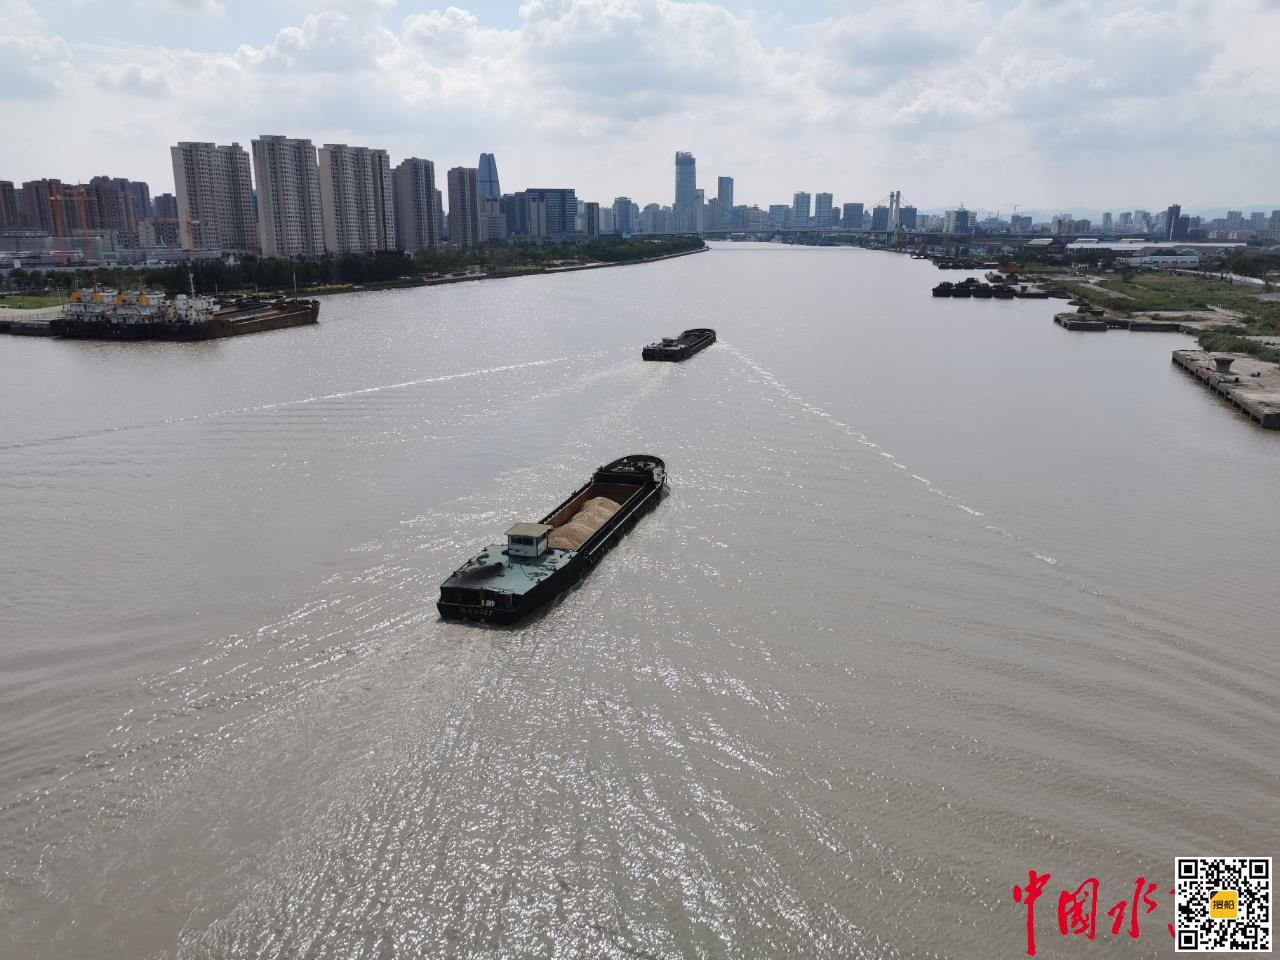 今年第一季度杭甬运河宁波段货运量破百万吨 创同期历史新高